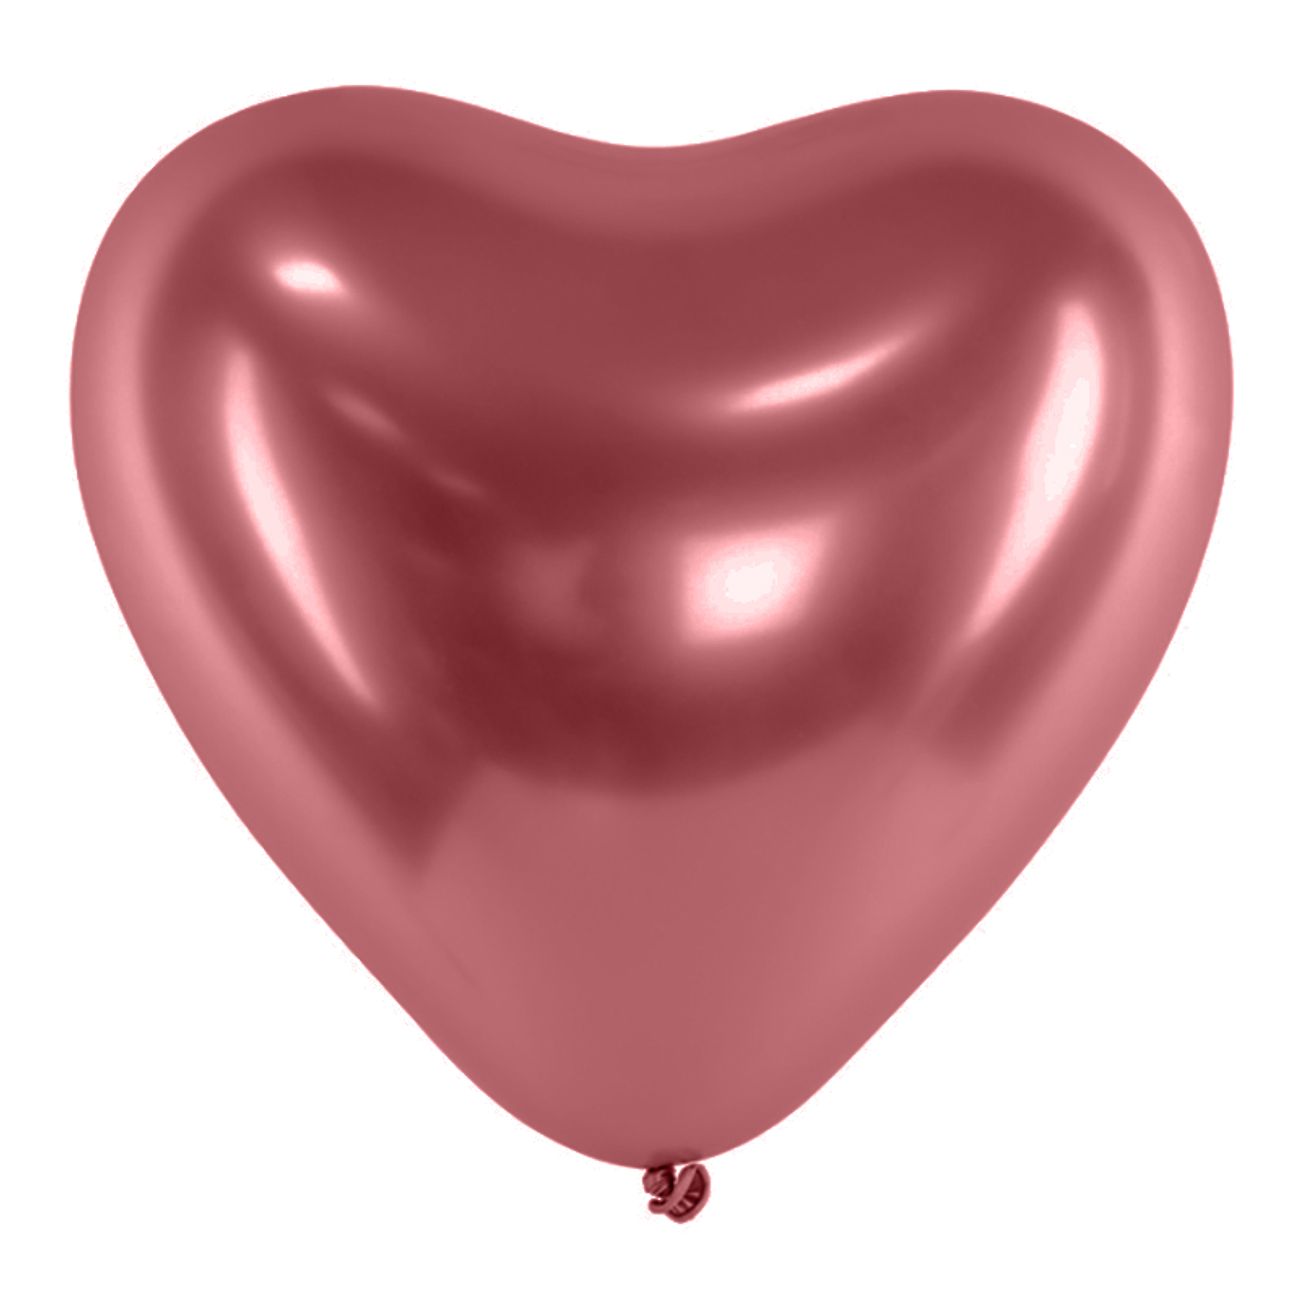 hjartballonger-krom-rosa-2